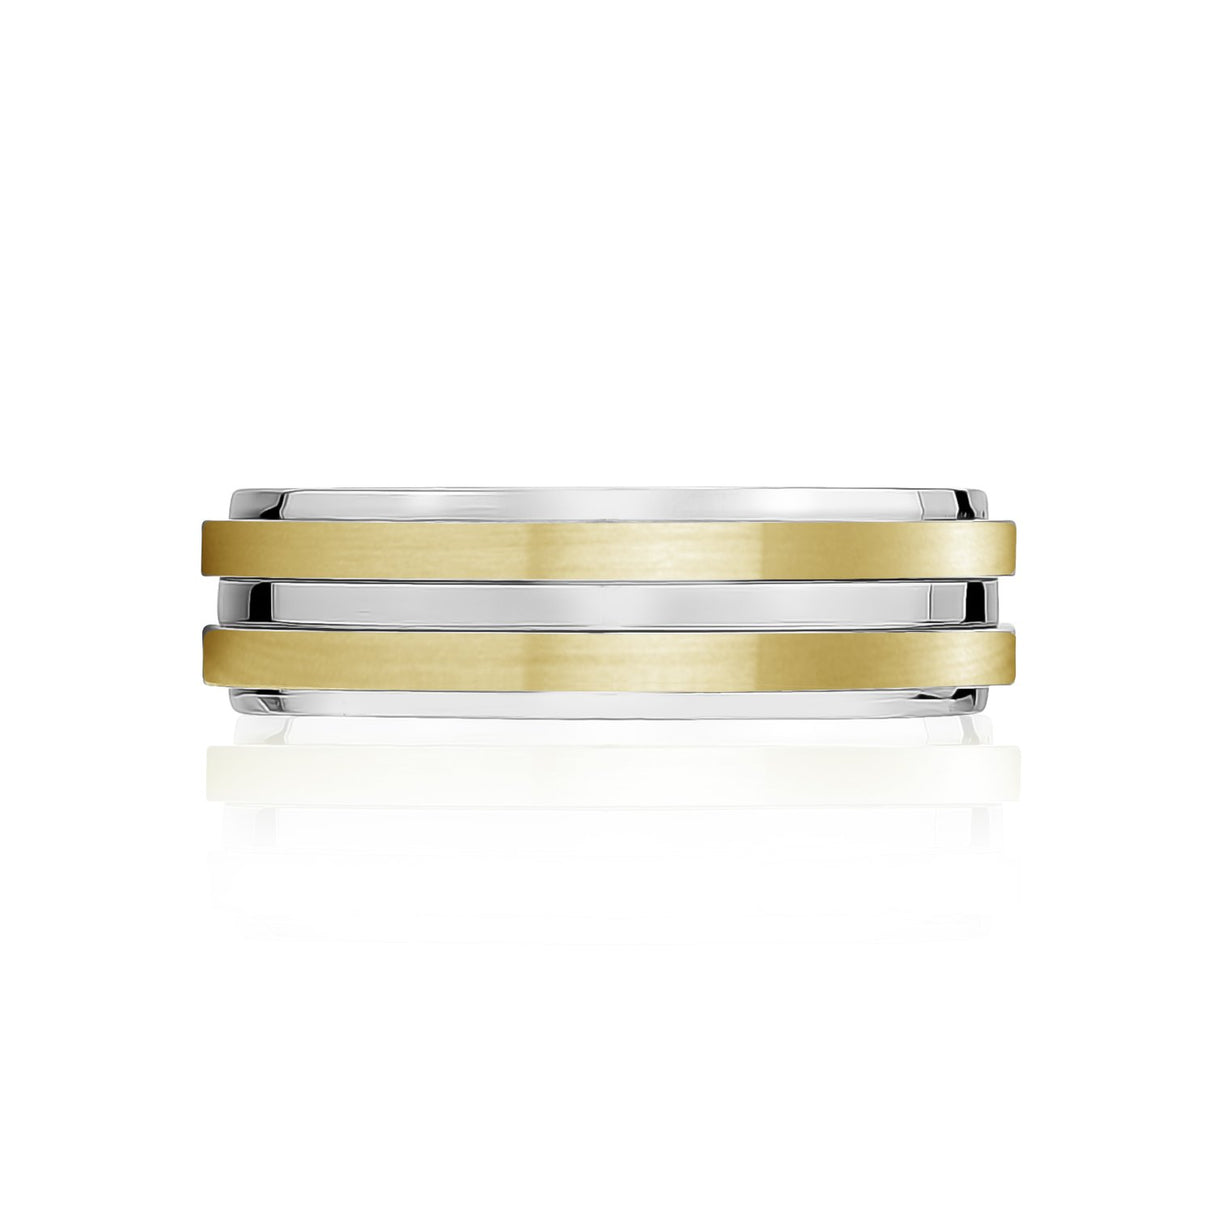 男性用リング - 7mmゴールドステンレススチール結婚指輪リング - 刻印可能